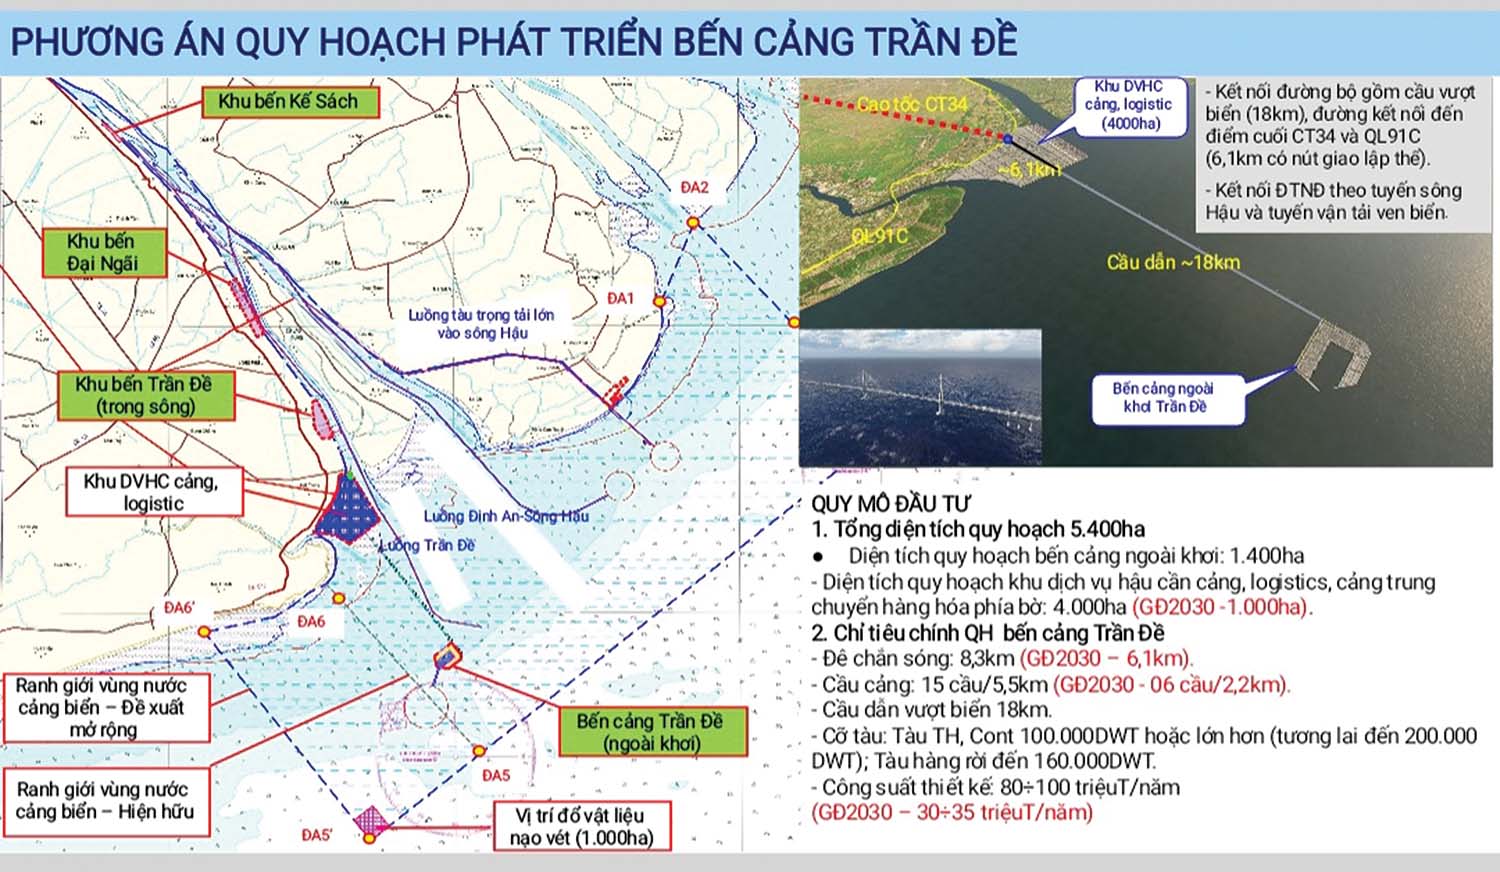 Phương án quy hoạch phát triển bến cảng Trần Đề 	(ảnh do cmb cung cấp)